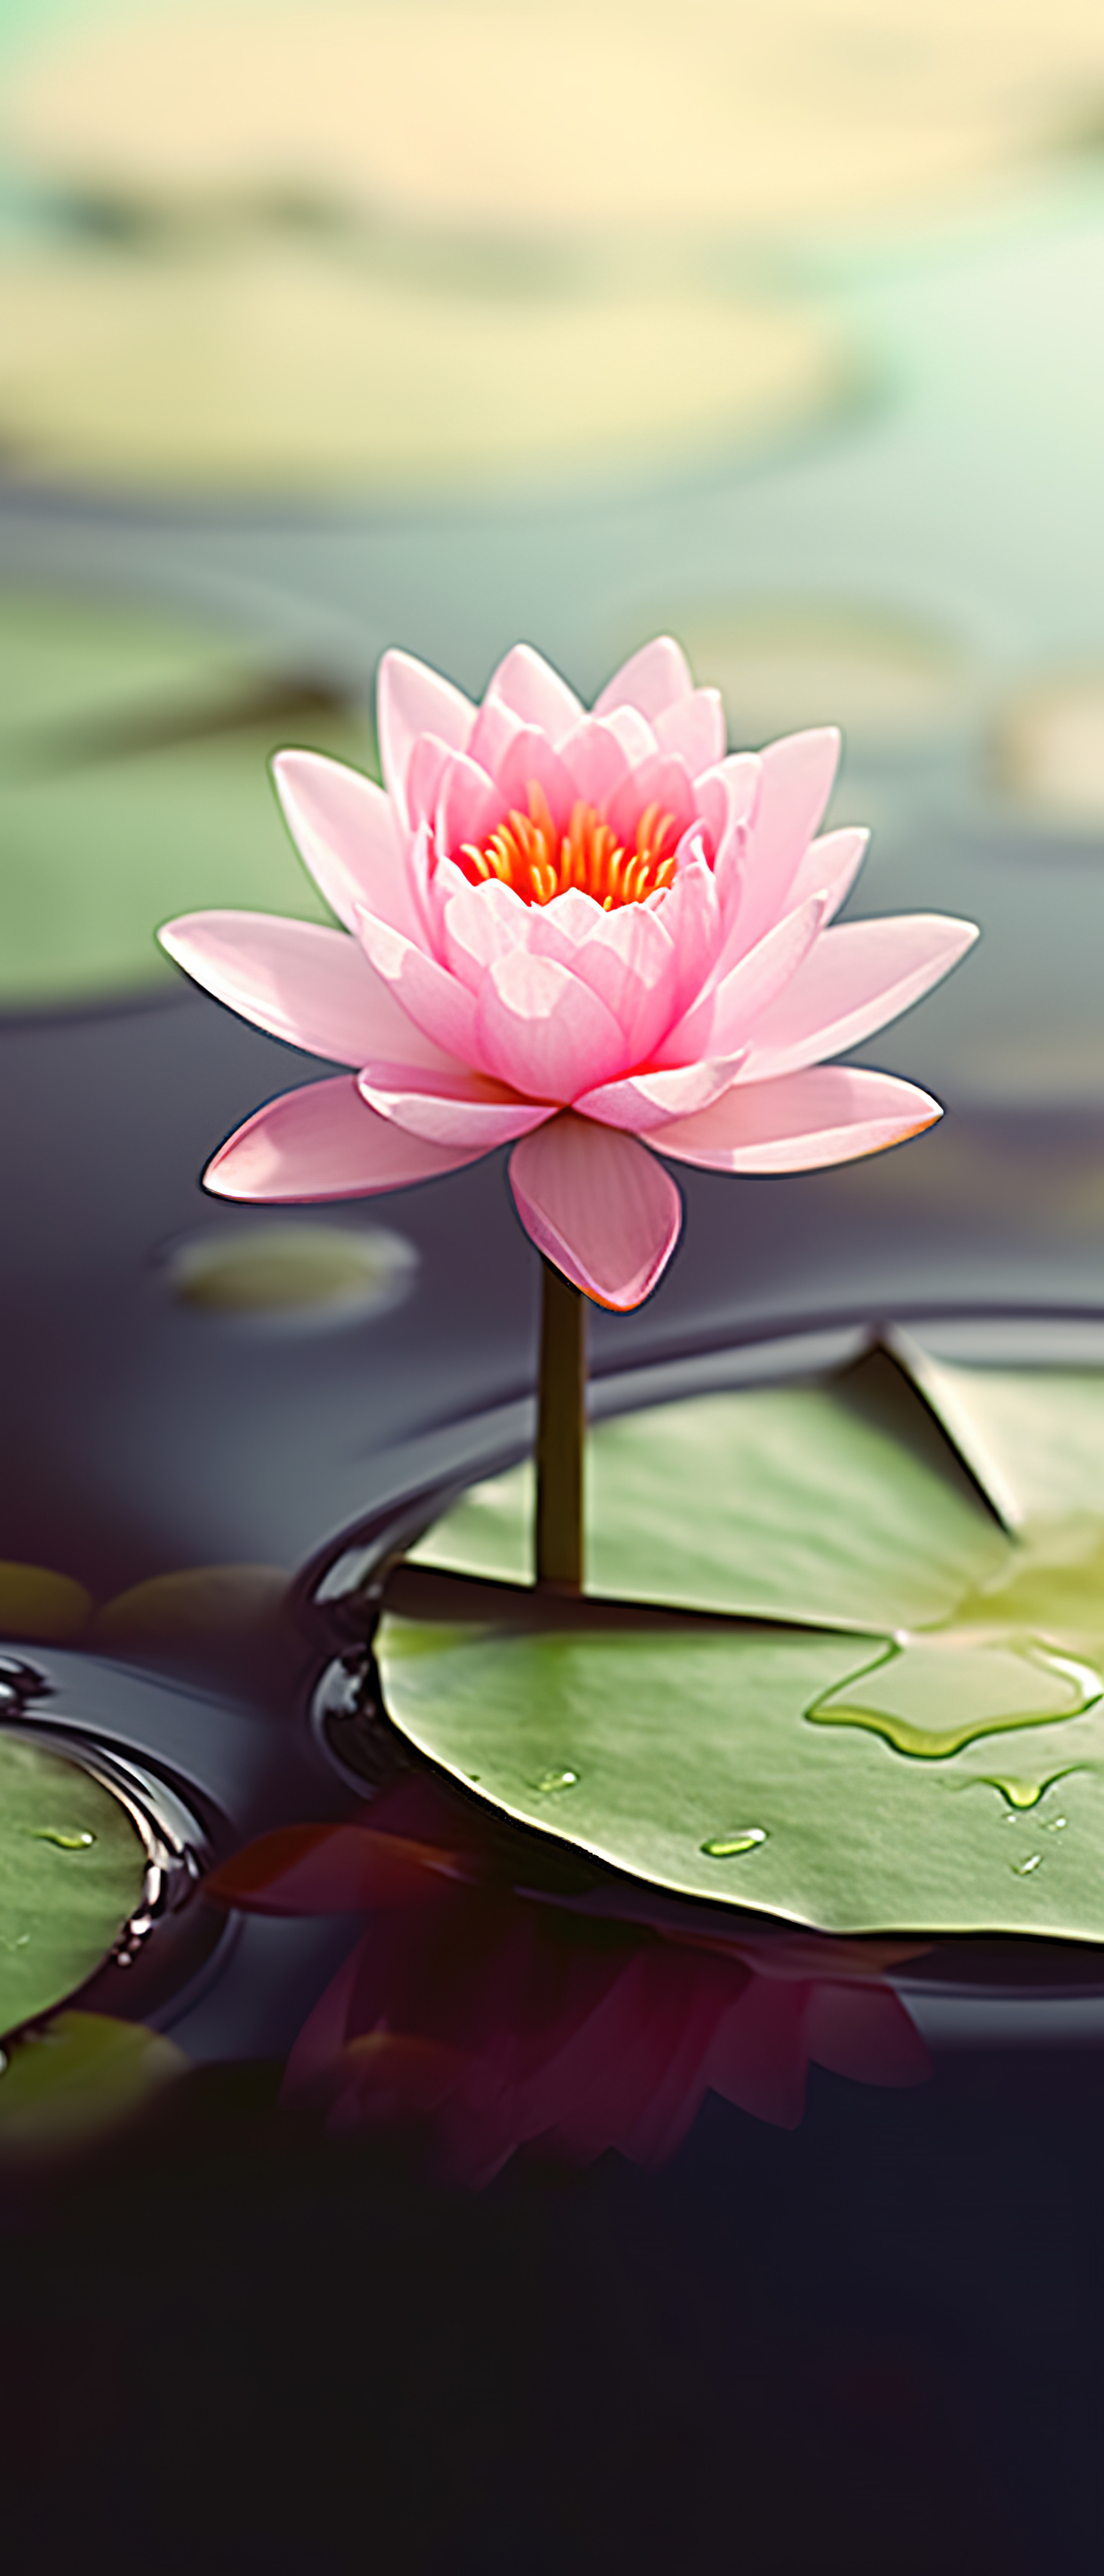 一朵粉红色的花和绿色的睡莲叶一起坐在水中图片